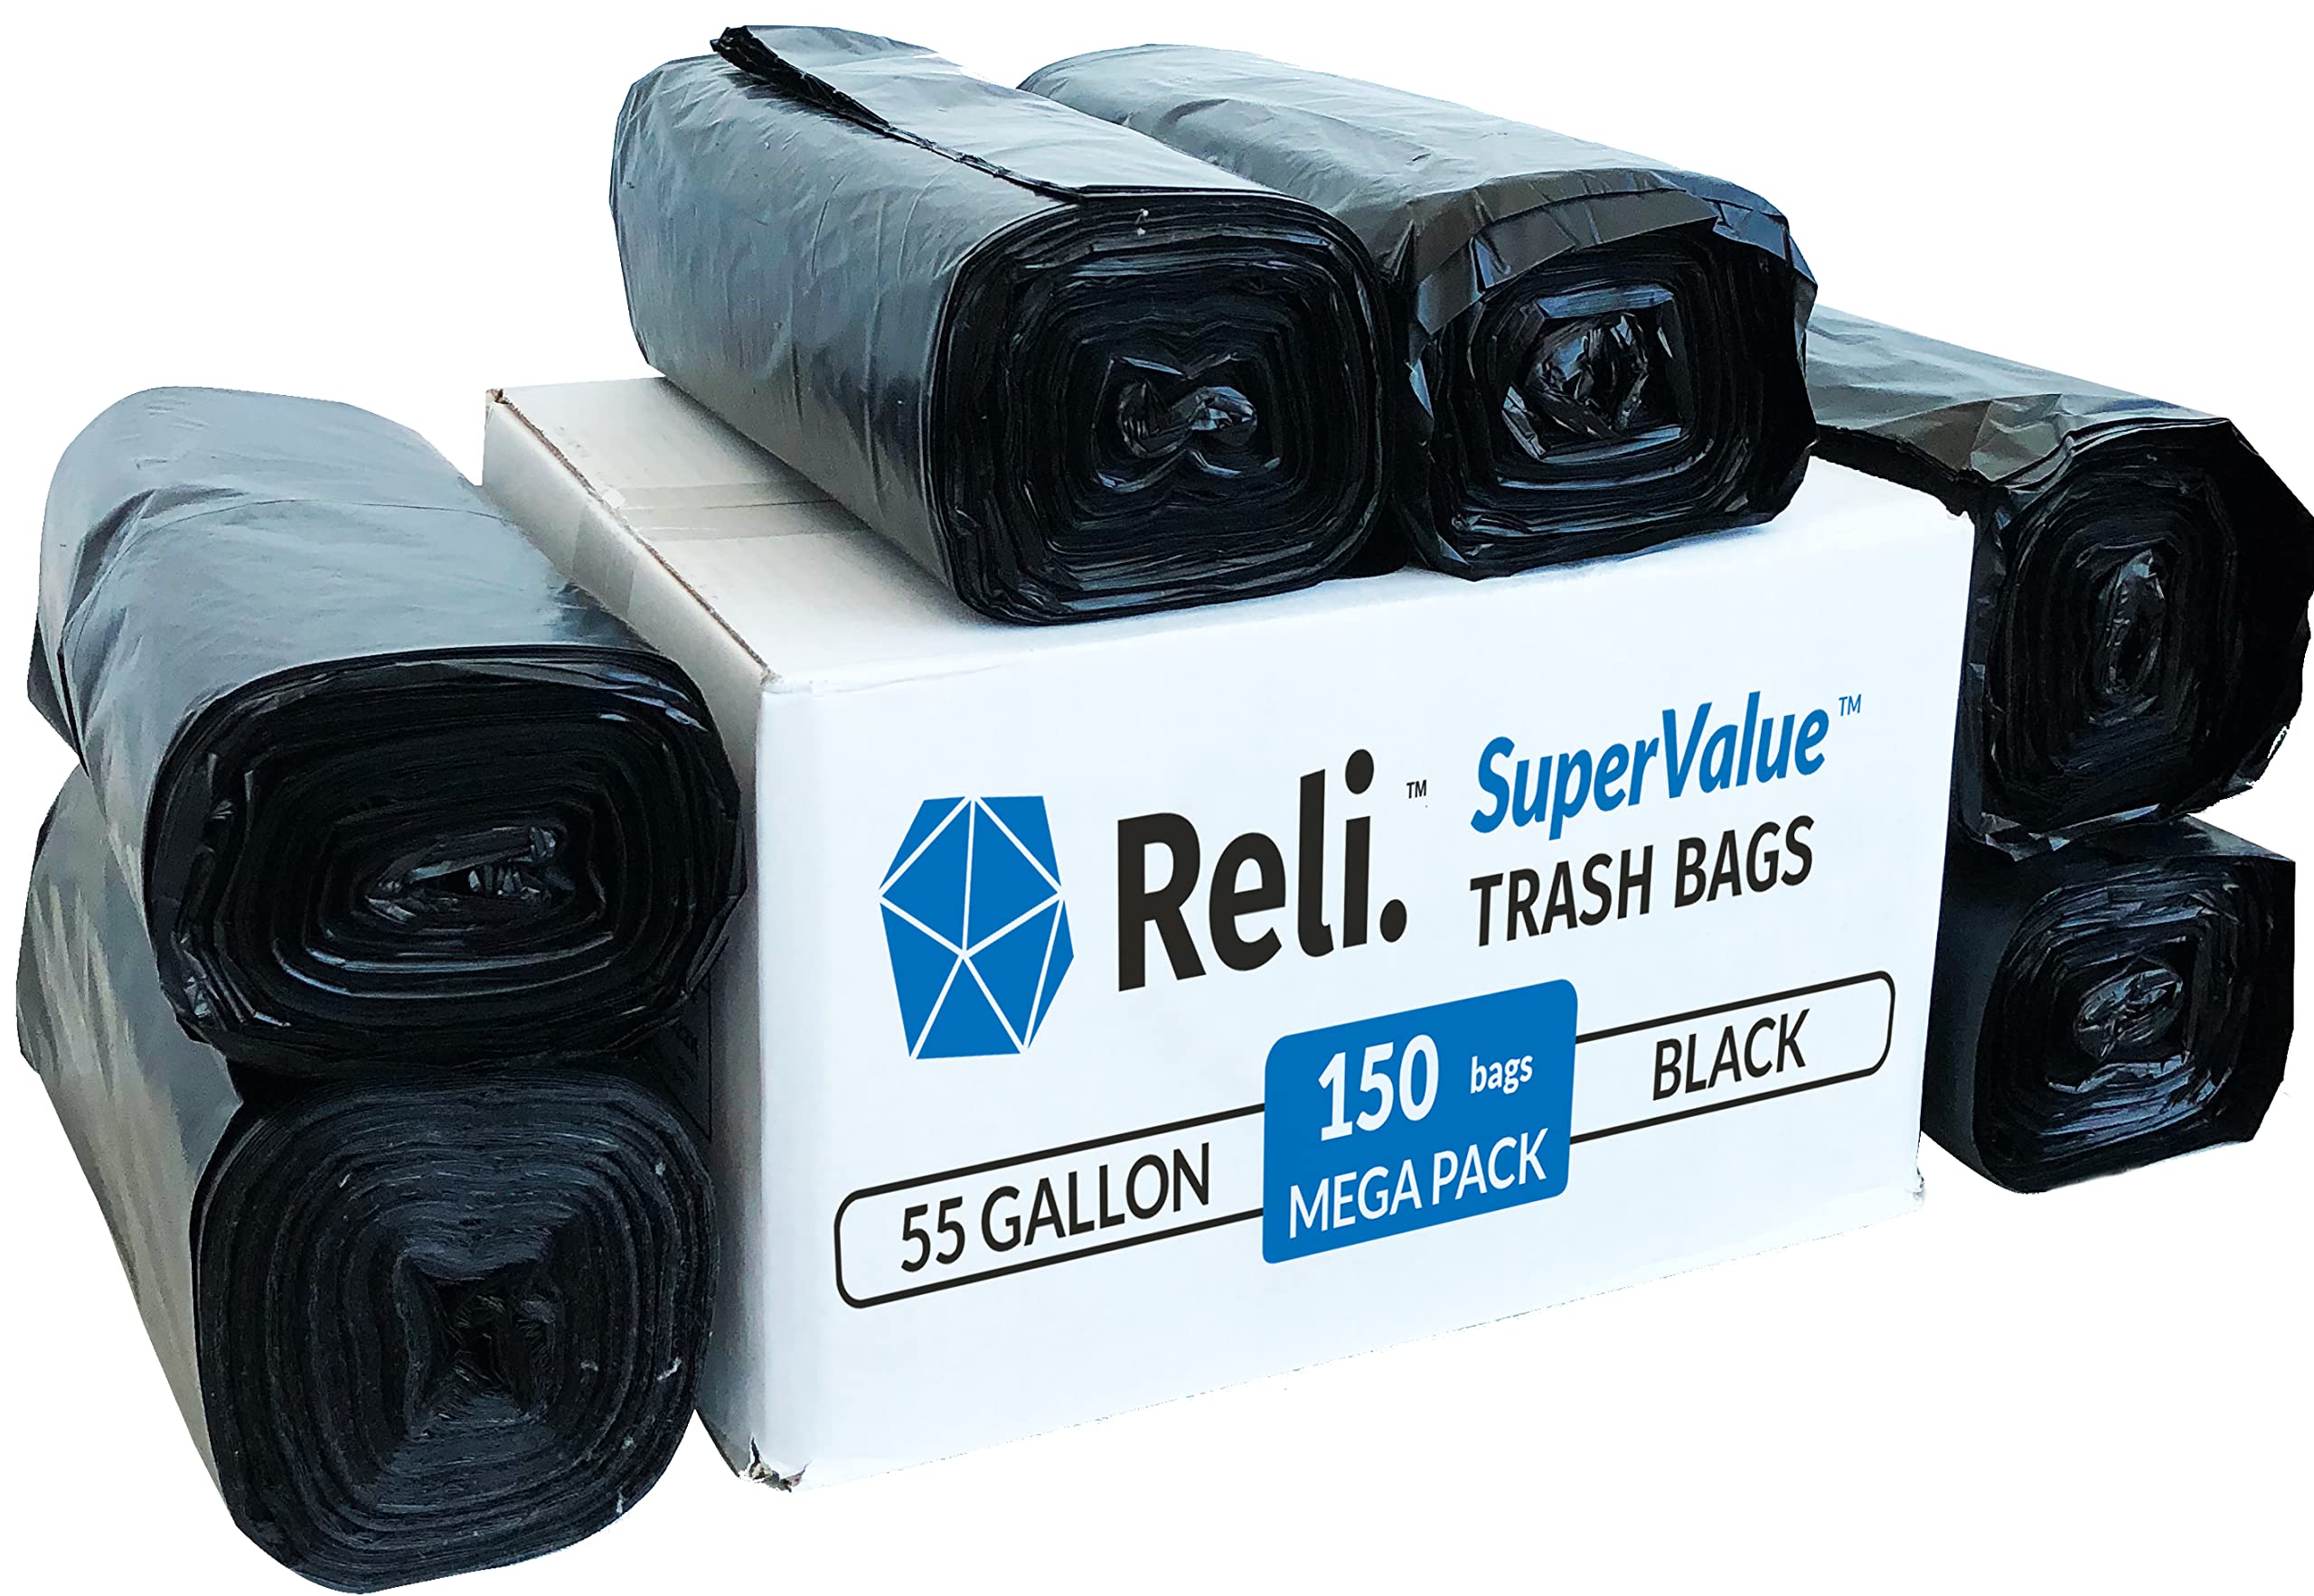 Reli. ProGrade Contractor Trash Bags 55 Gallon (20 Bags w/Ties